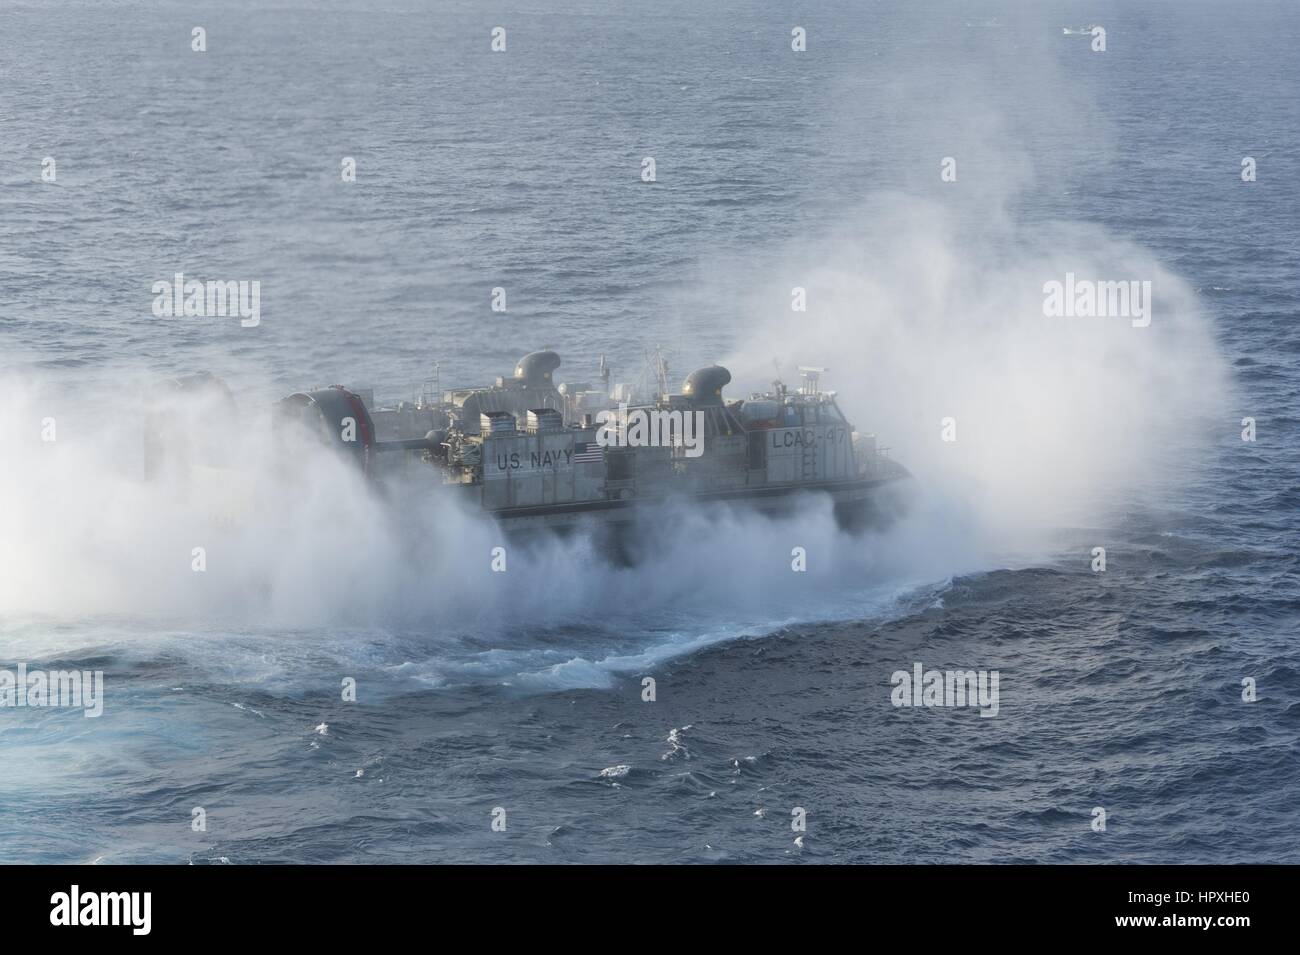 Un desembarco de cojín de aire (LCAC) sale bien la cubierta del buque de asalto anfibio USS Bonhomme Richard, el Mar de China Oriental, 26 de enero de 2012. Imagen cortesía de Adam Wainwright/US Navy. Foto de stock